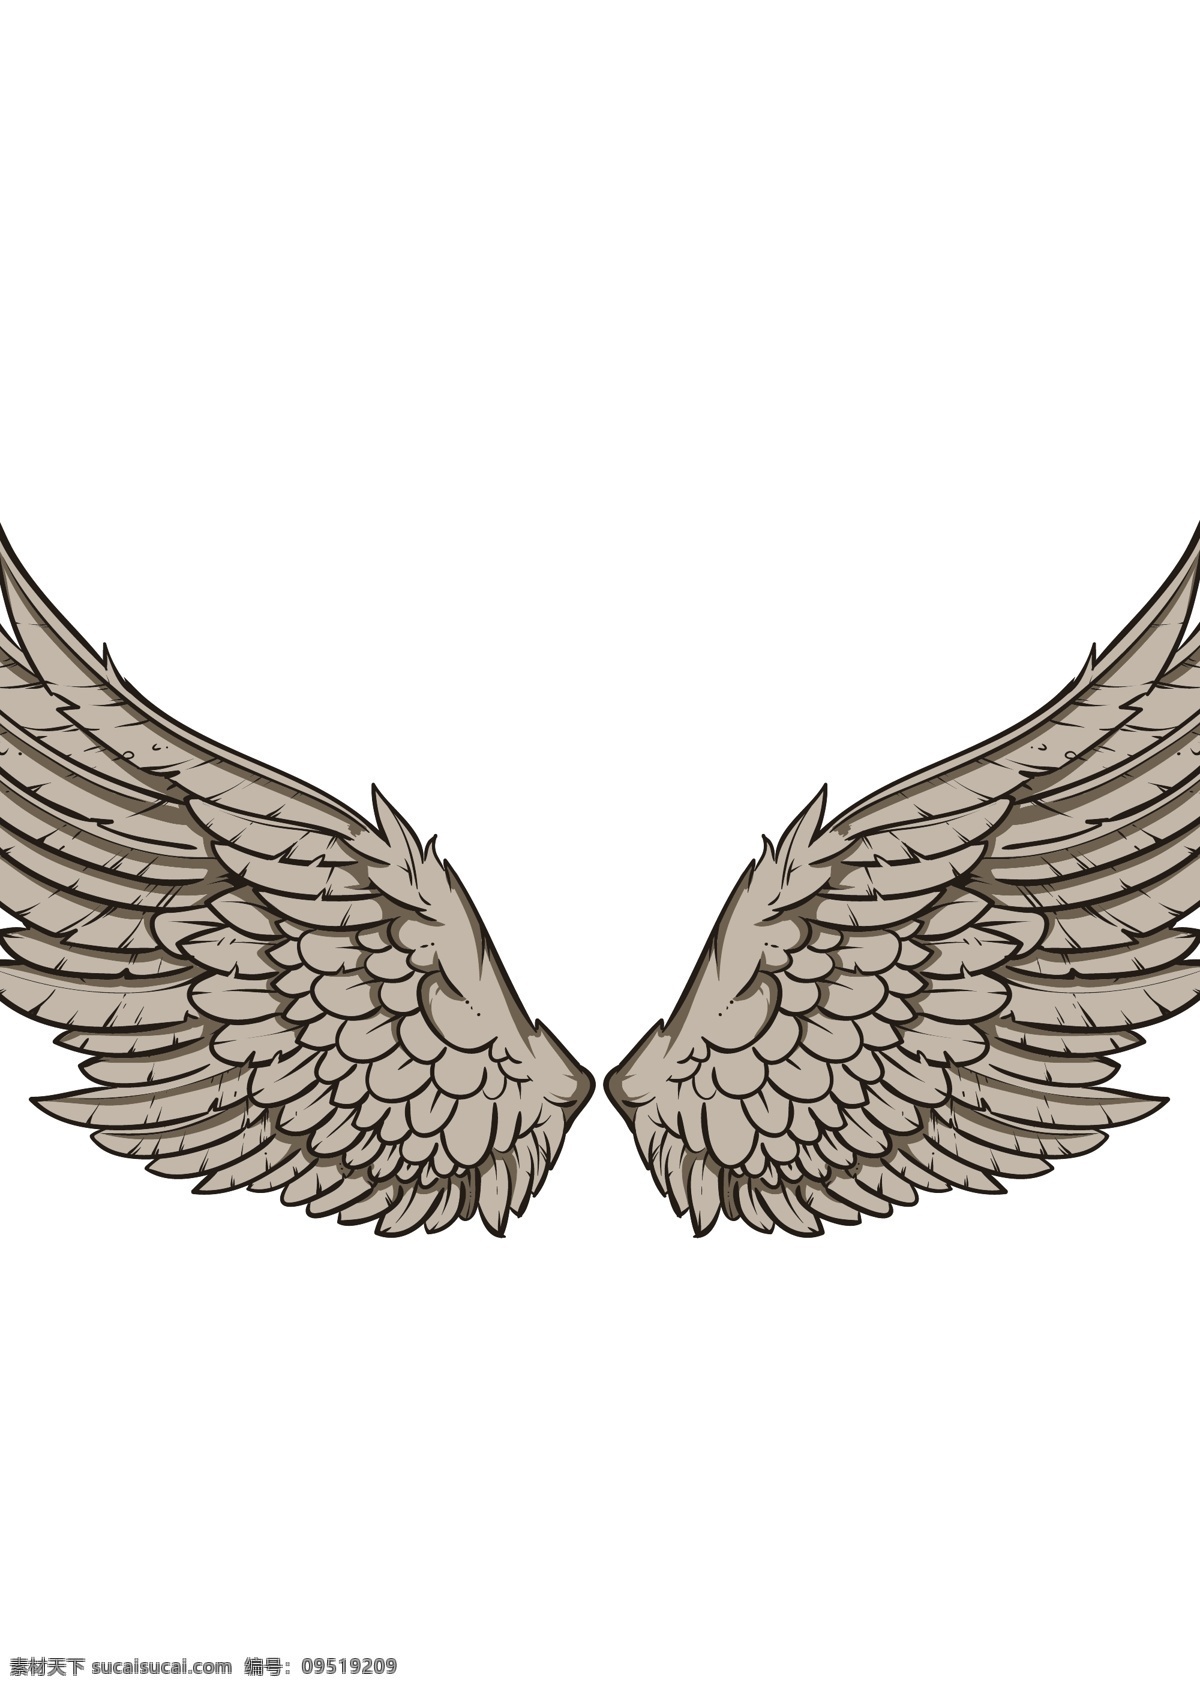 翅膀 羽毛 天使翅膀 翅膀设计 翅膀素材 鸟类翅膀 纹身图案 手绘 矢量 白色